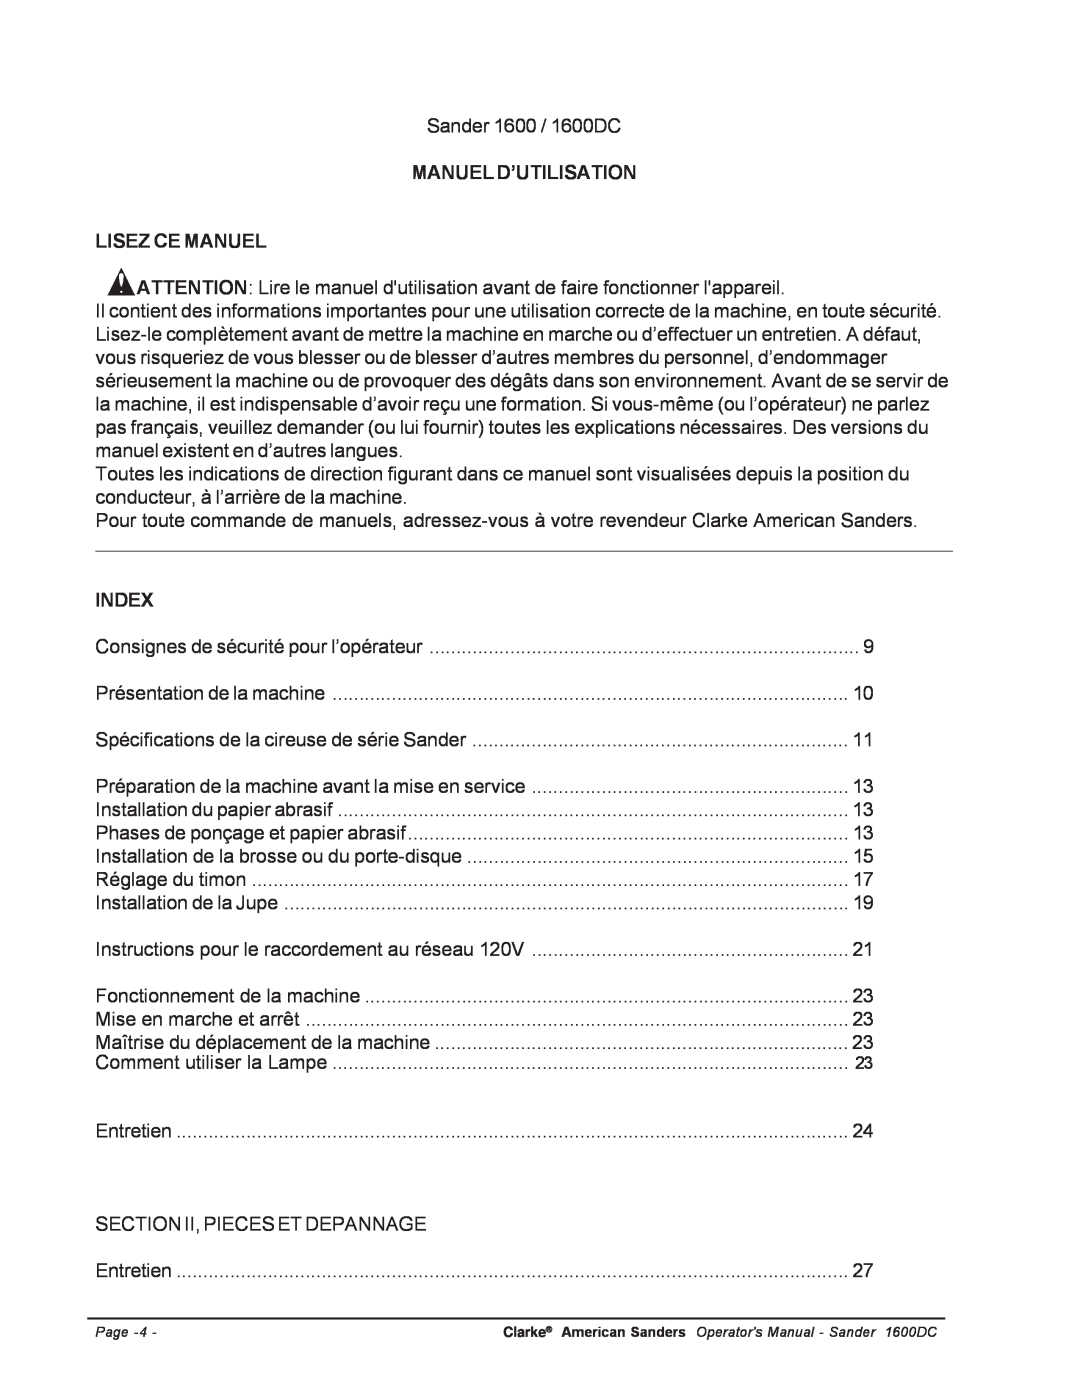 Nilfisk-ALTO C.A.V. 15 manual Manuel D’Utilisation Lisez Ce Manuel, Index 